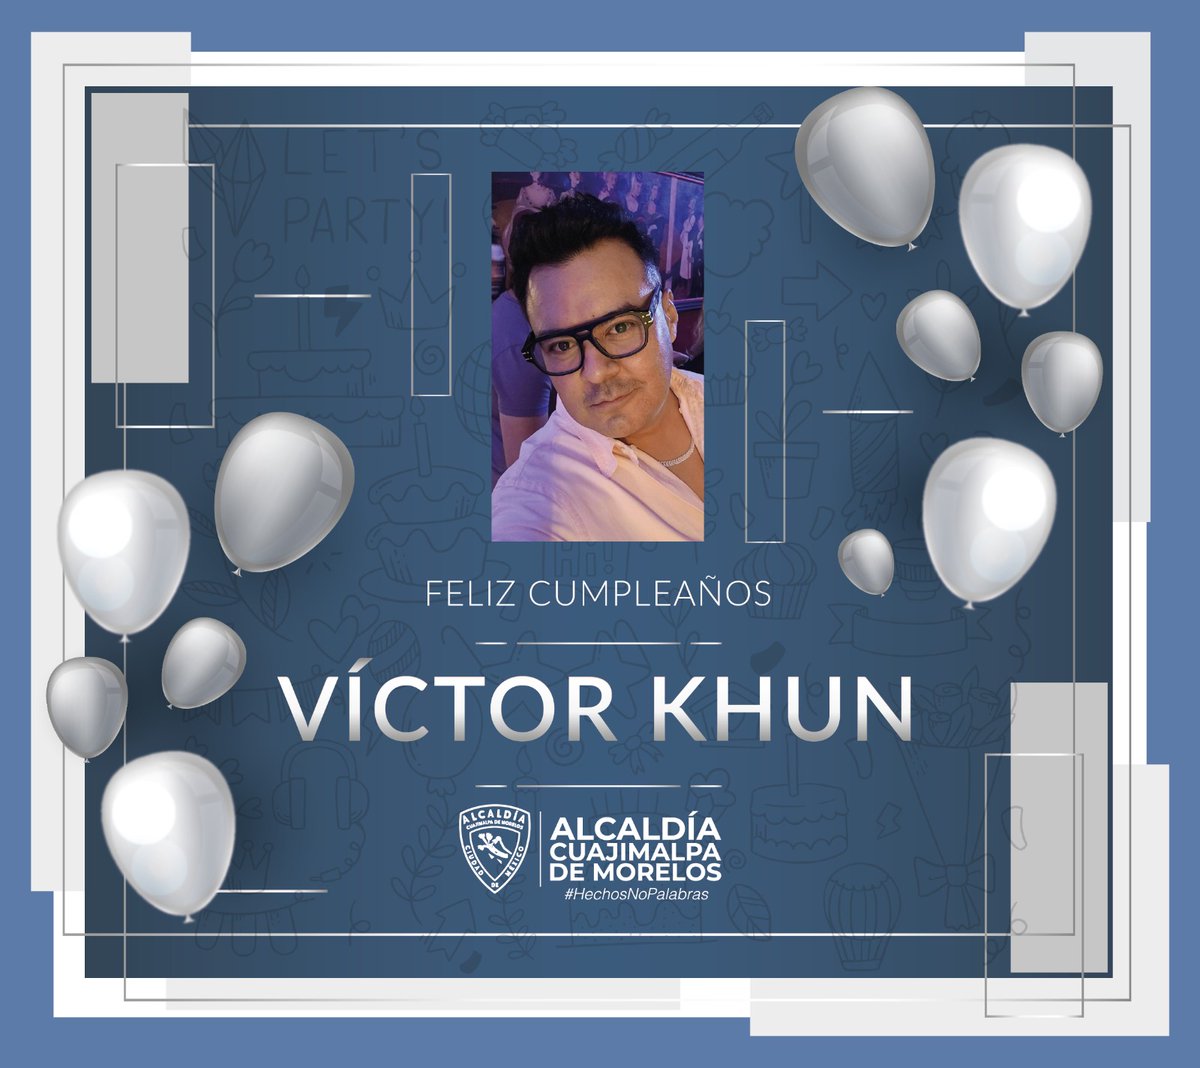 La alcaldía Cuajimalpa de Morelos felicita a Víctor Khun, con motivo de su cumpleaños ¡Muchas felicidades Víctor!